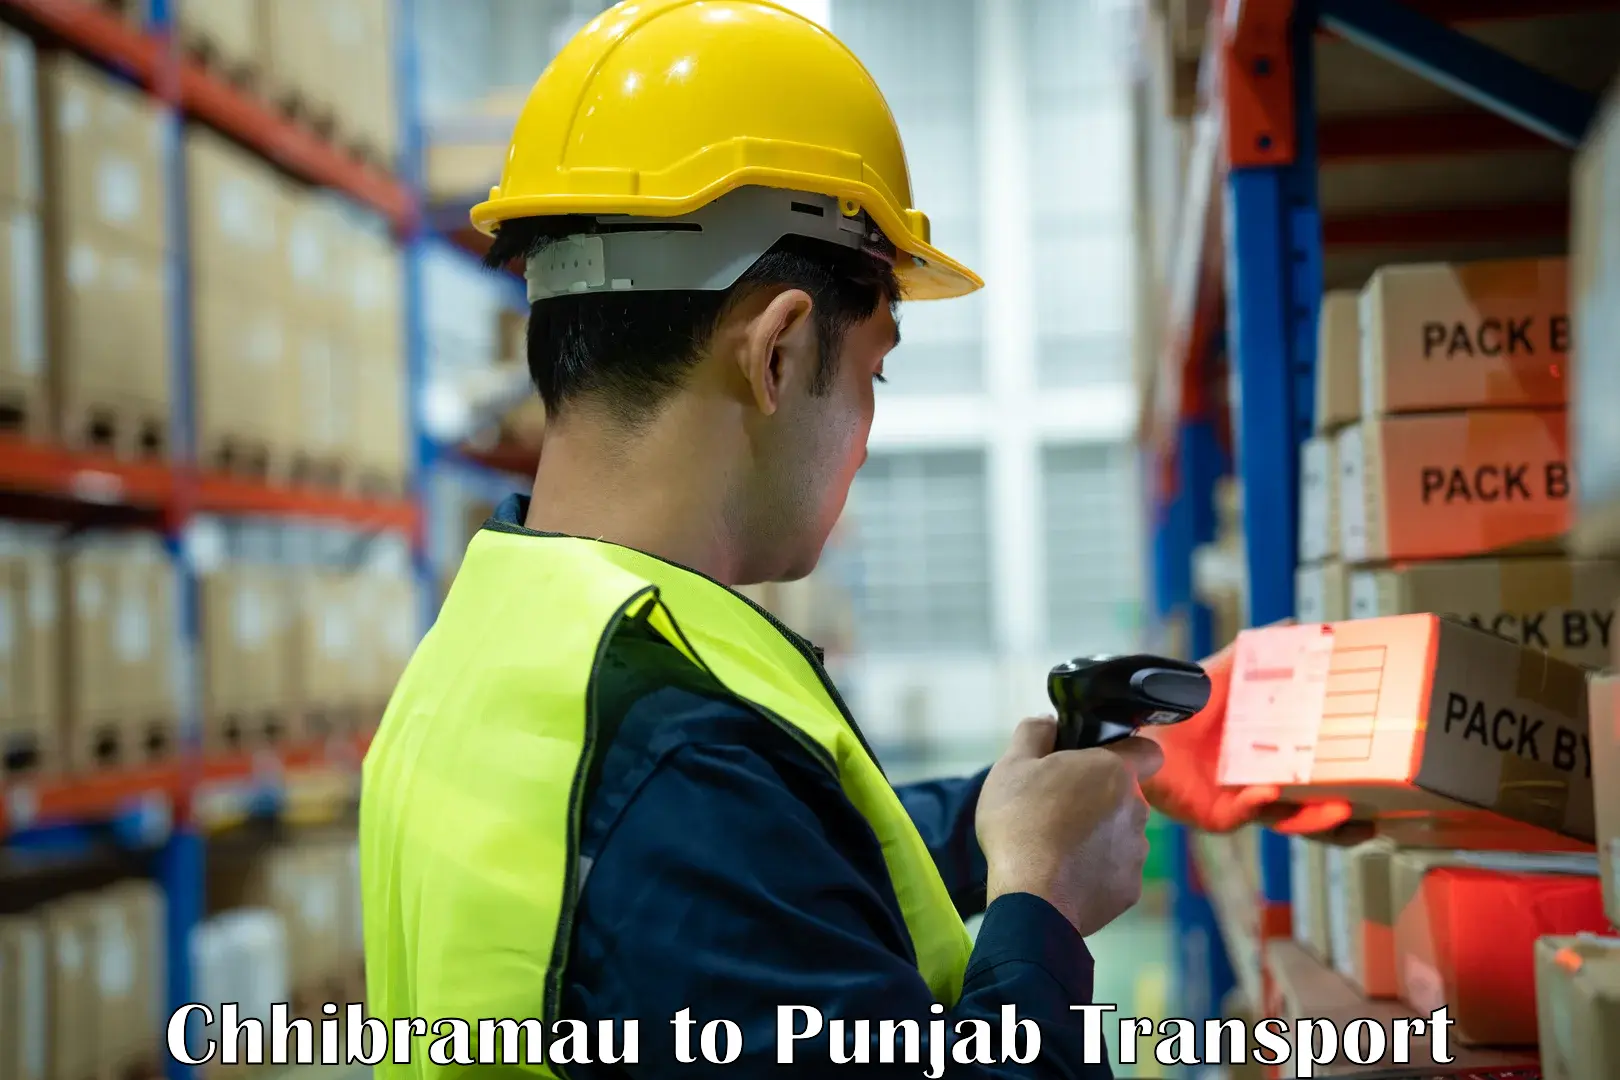 International cargo transportation services Chhibramau to Punjab